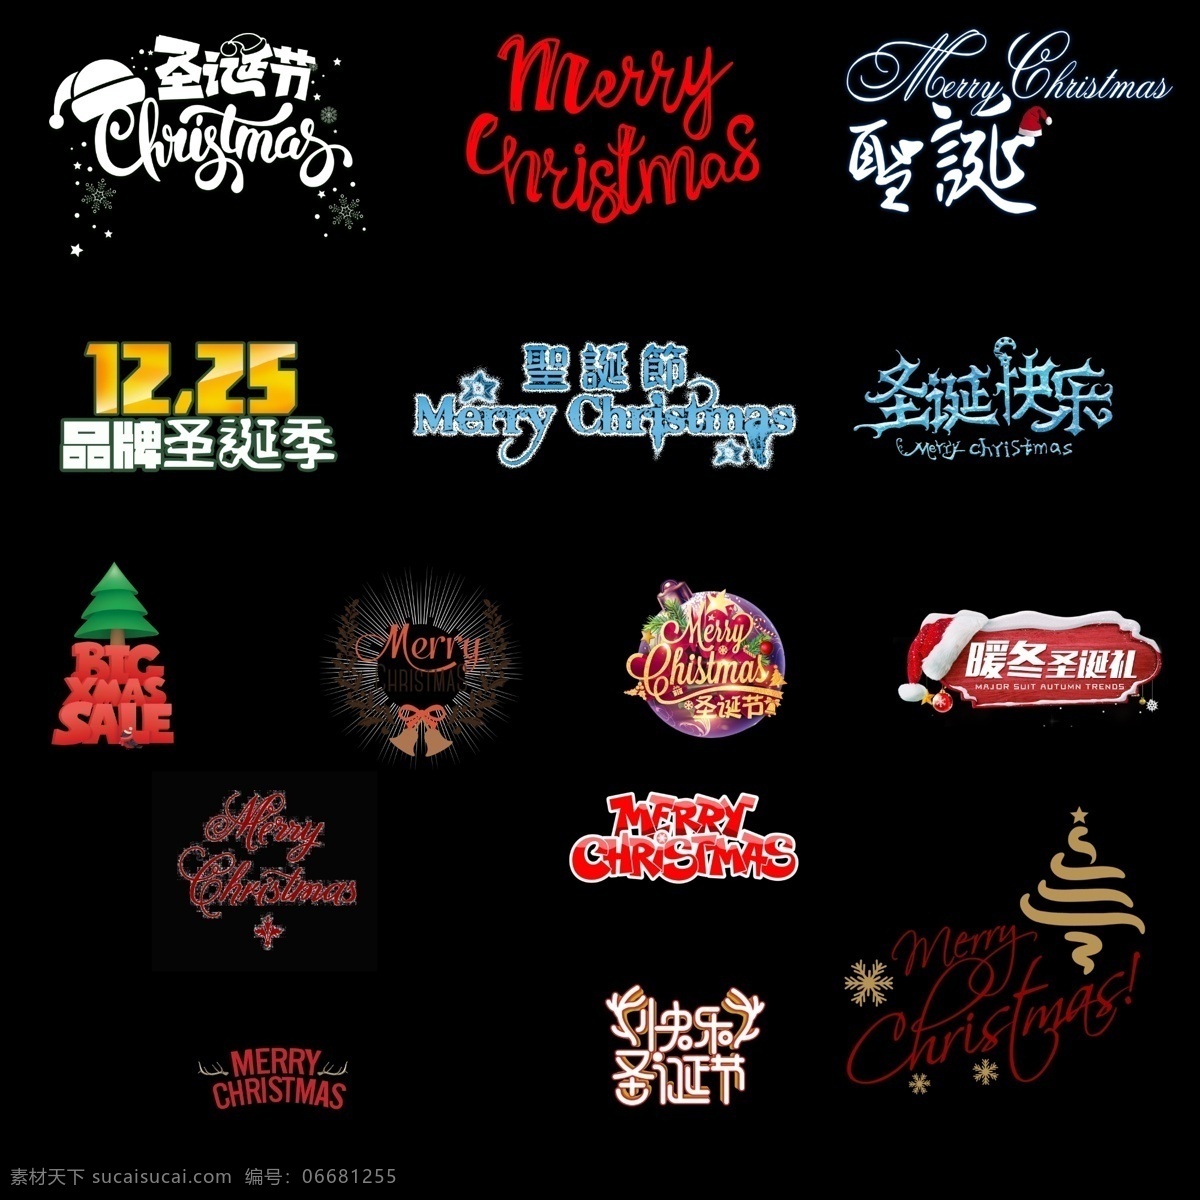 圣诞节 艺术 字 合集 圣诞节狂欢 节日促销 创意 圣诞 艺术字 圣诞艺术字 圣诞节字体